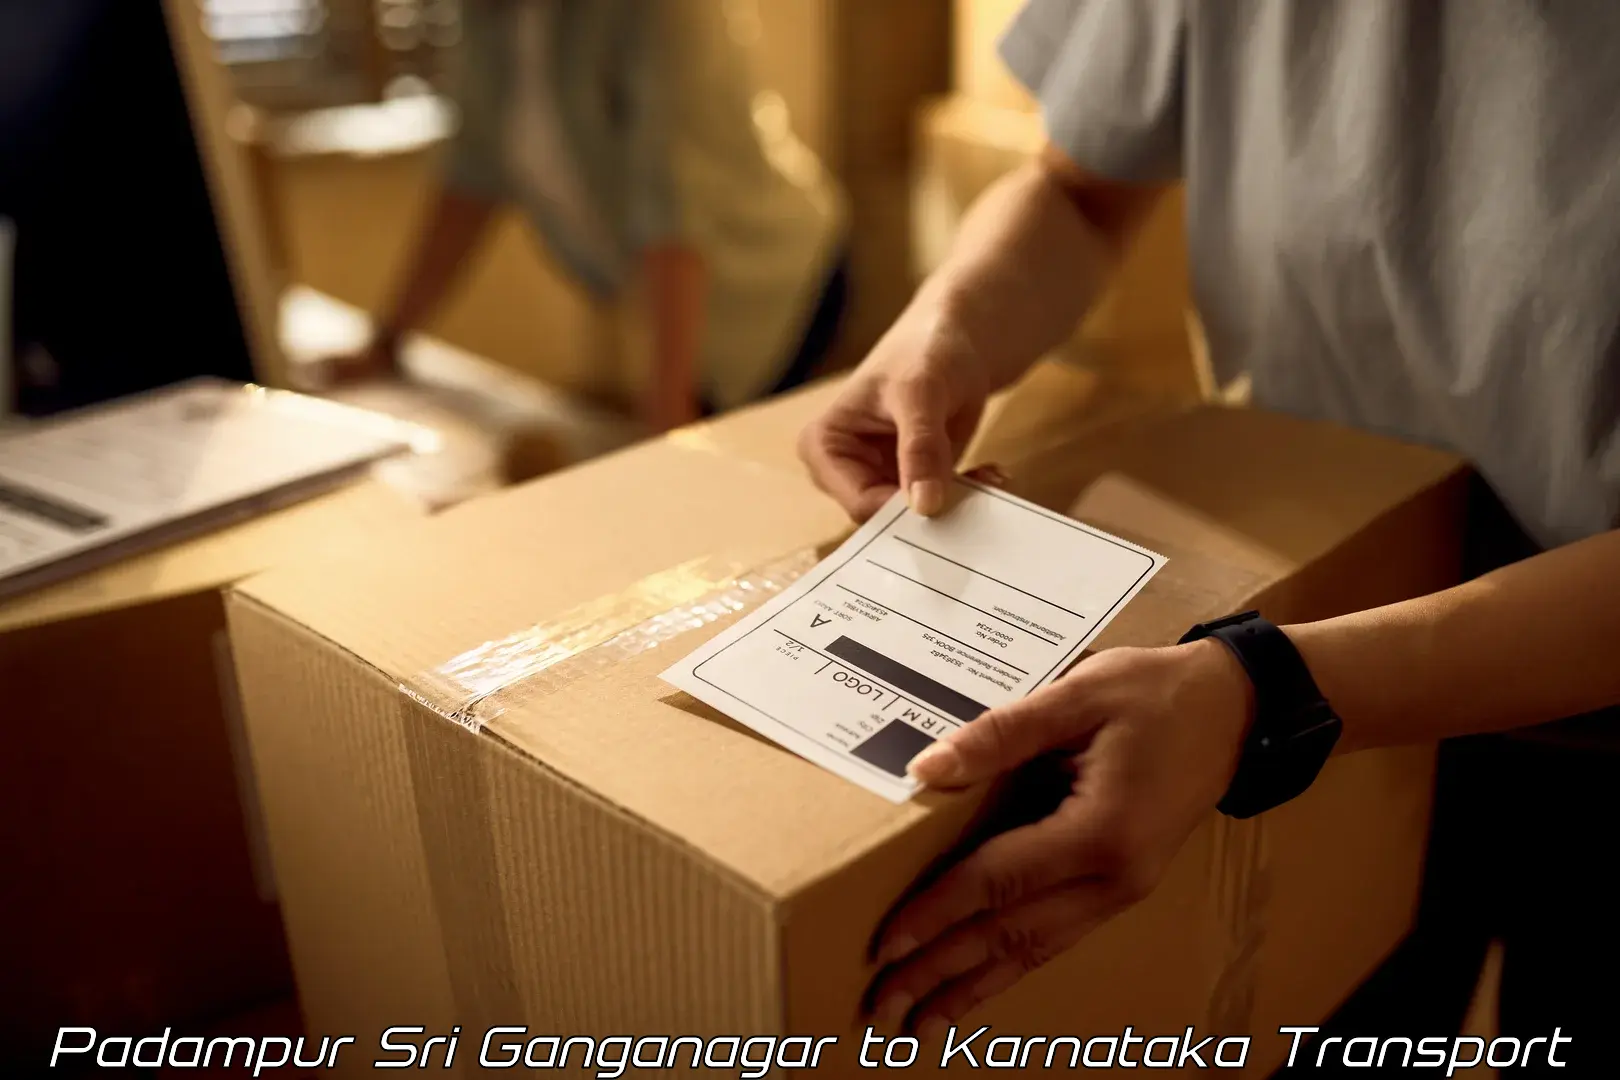 Two wheeler parcel service Padampur Sri Ganganagar to Mudarangady